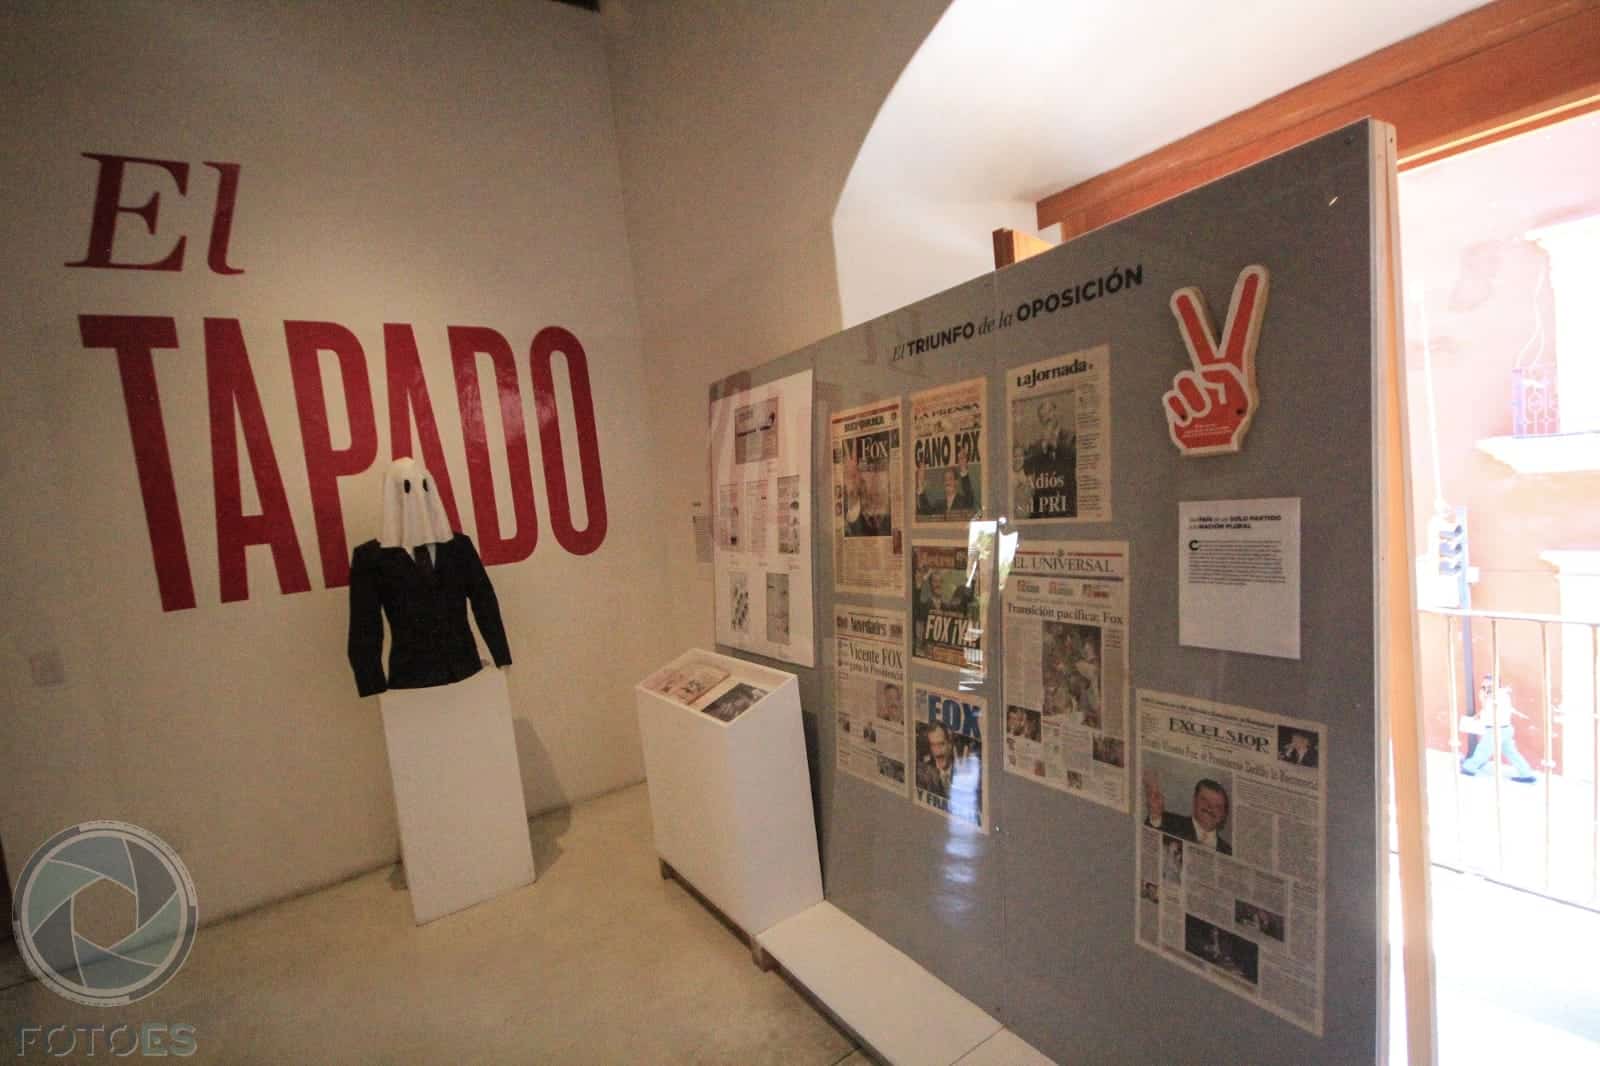 Exposición “Ciudadanía, Democracia y Propaganda Electoral en México”